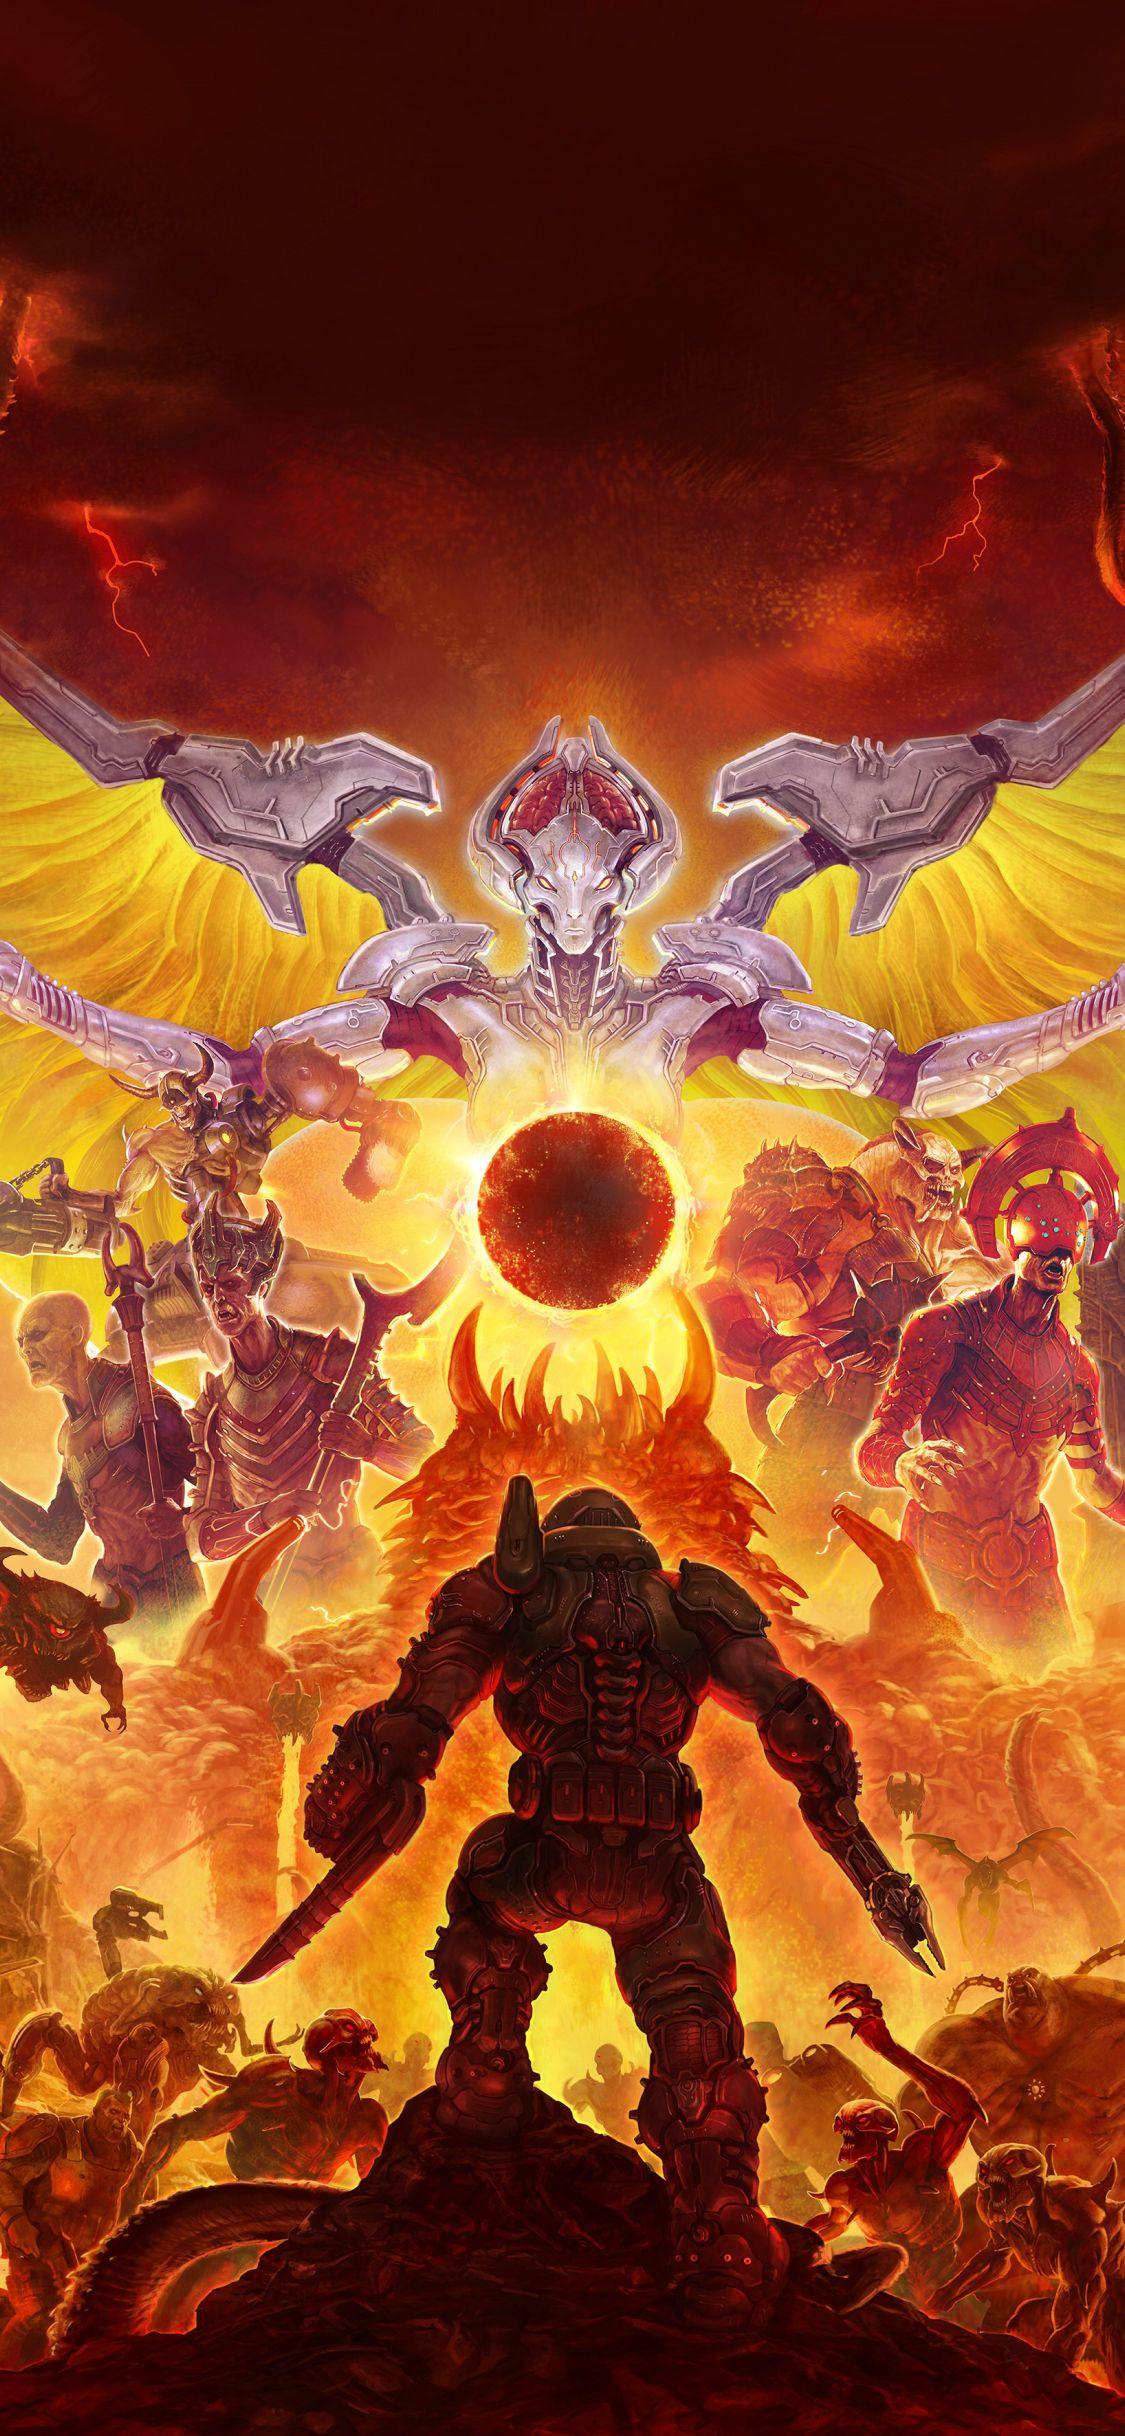 Download Unlock the Harrowed Power of the Doom Slayer Wallpaper  Wallpapers com